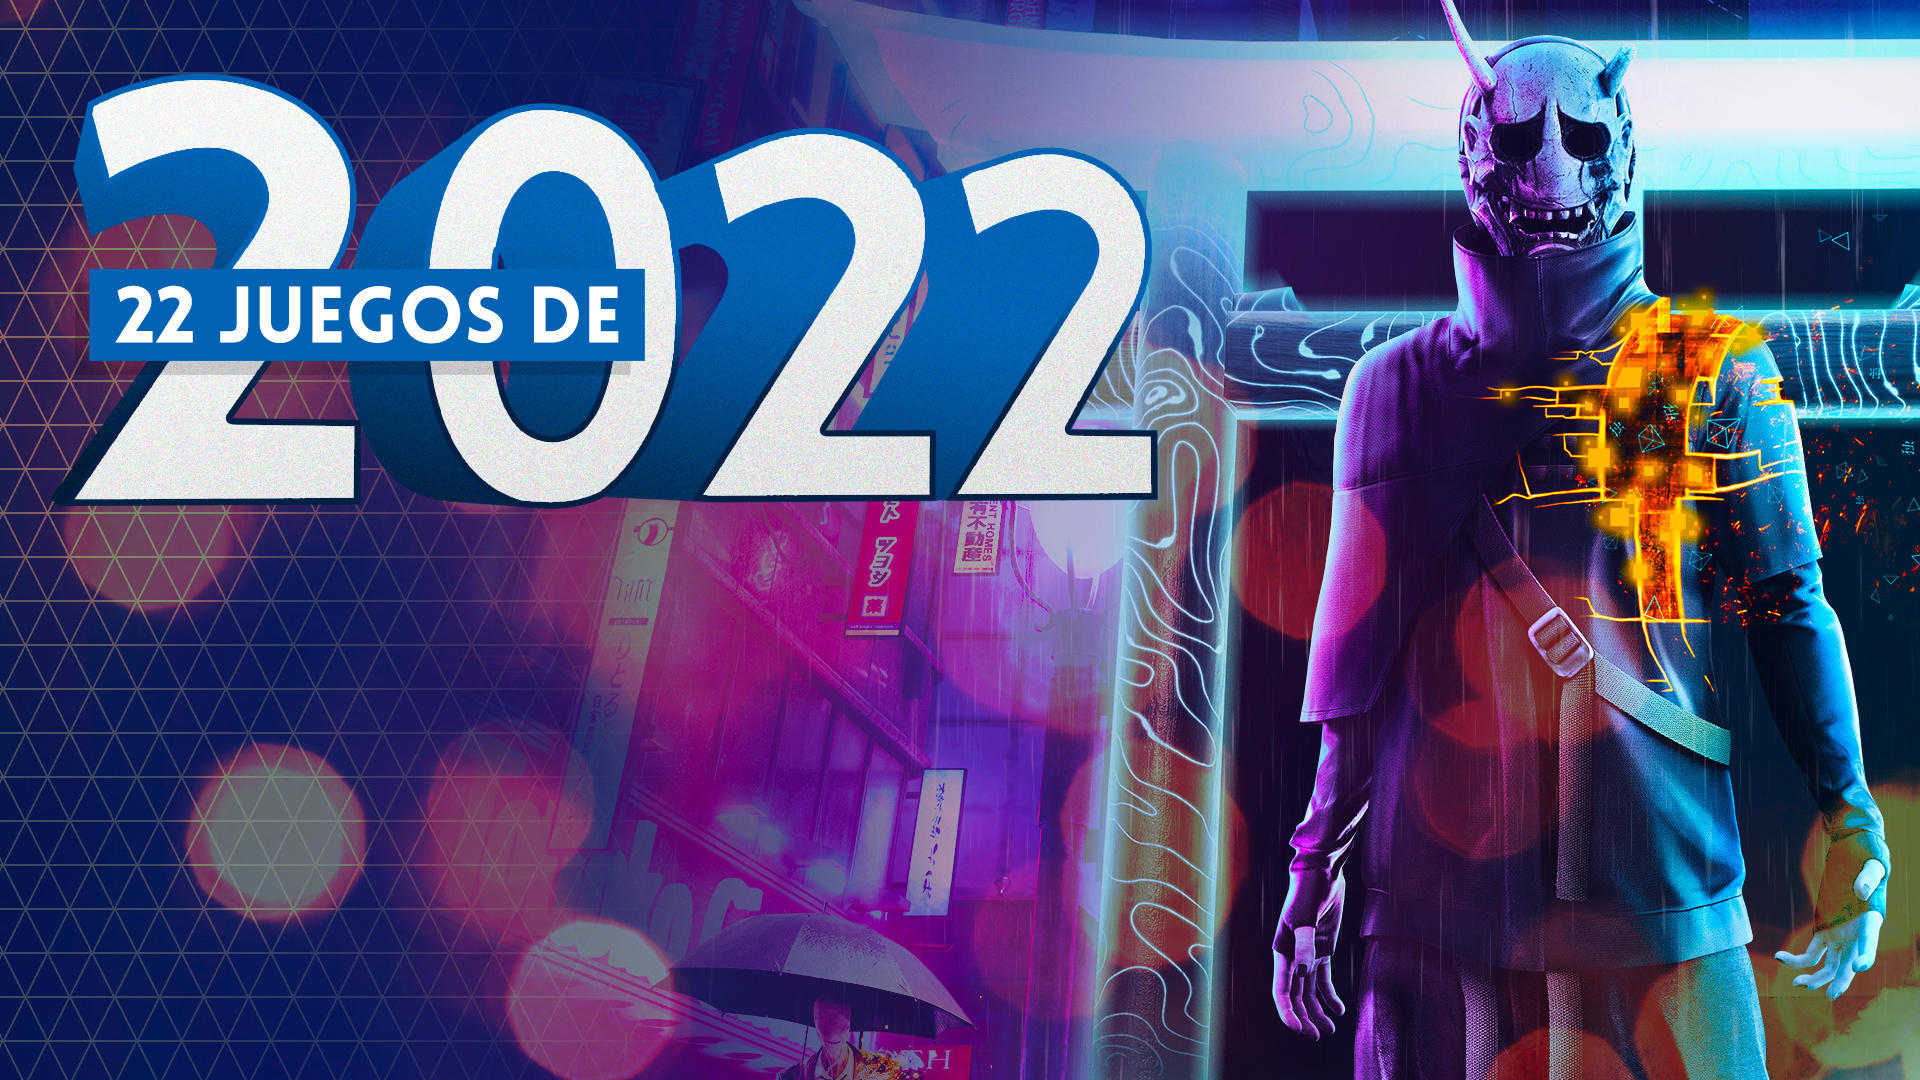 22 juegos de 2022 - Ghostwire: Tokyo